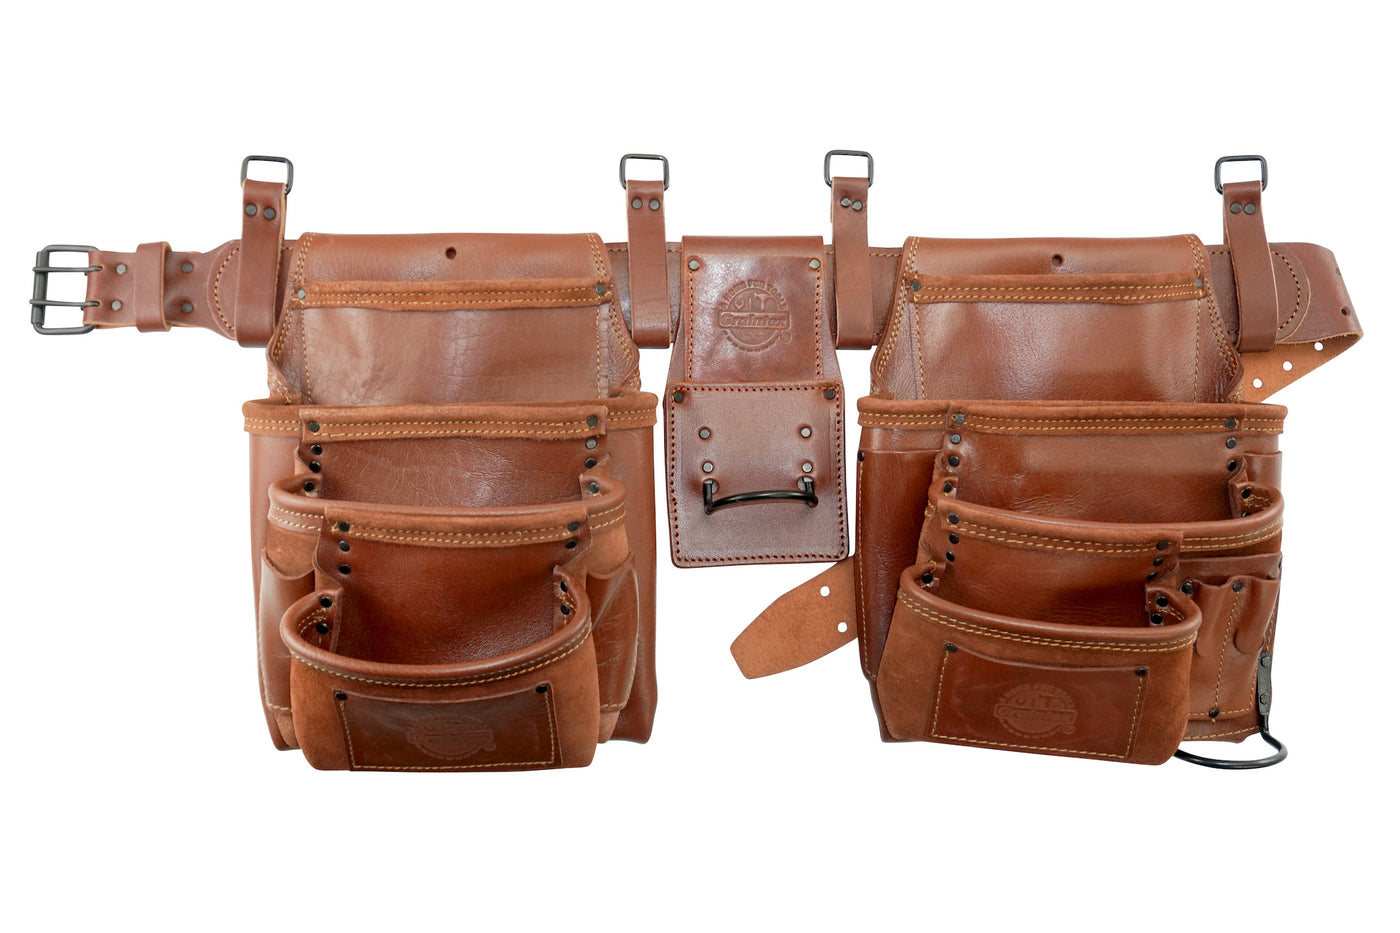 AD2784 :: 4 Piece 17 Pocket Framer's Tool Belt Combo Ambassador Series Chestnut Brown Color Grain Leather